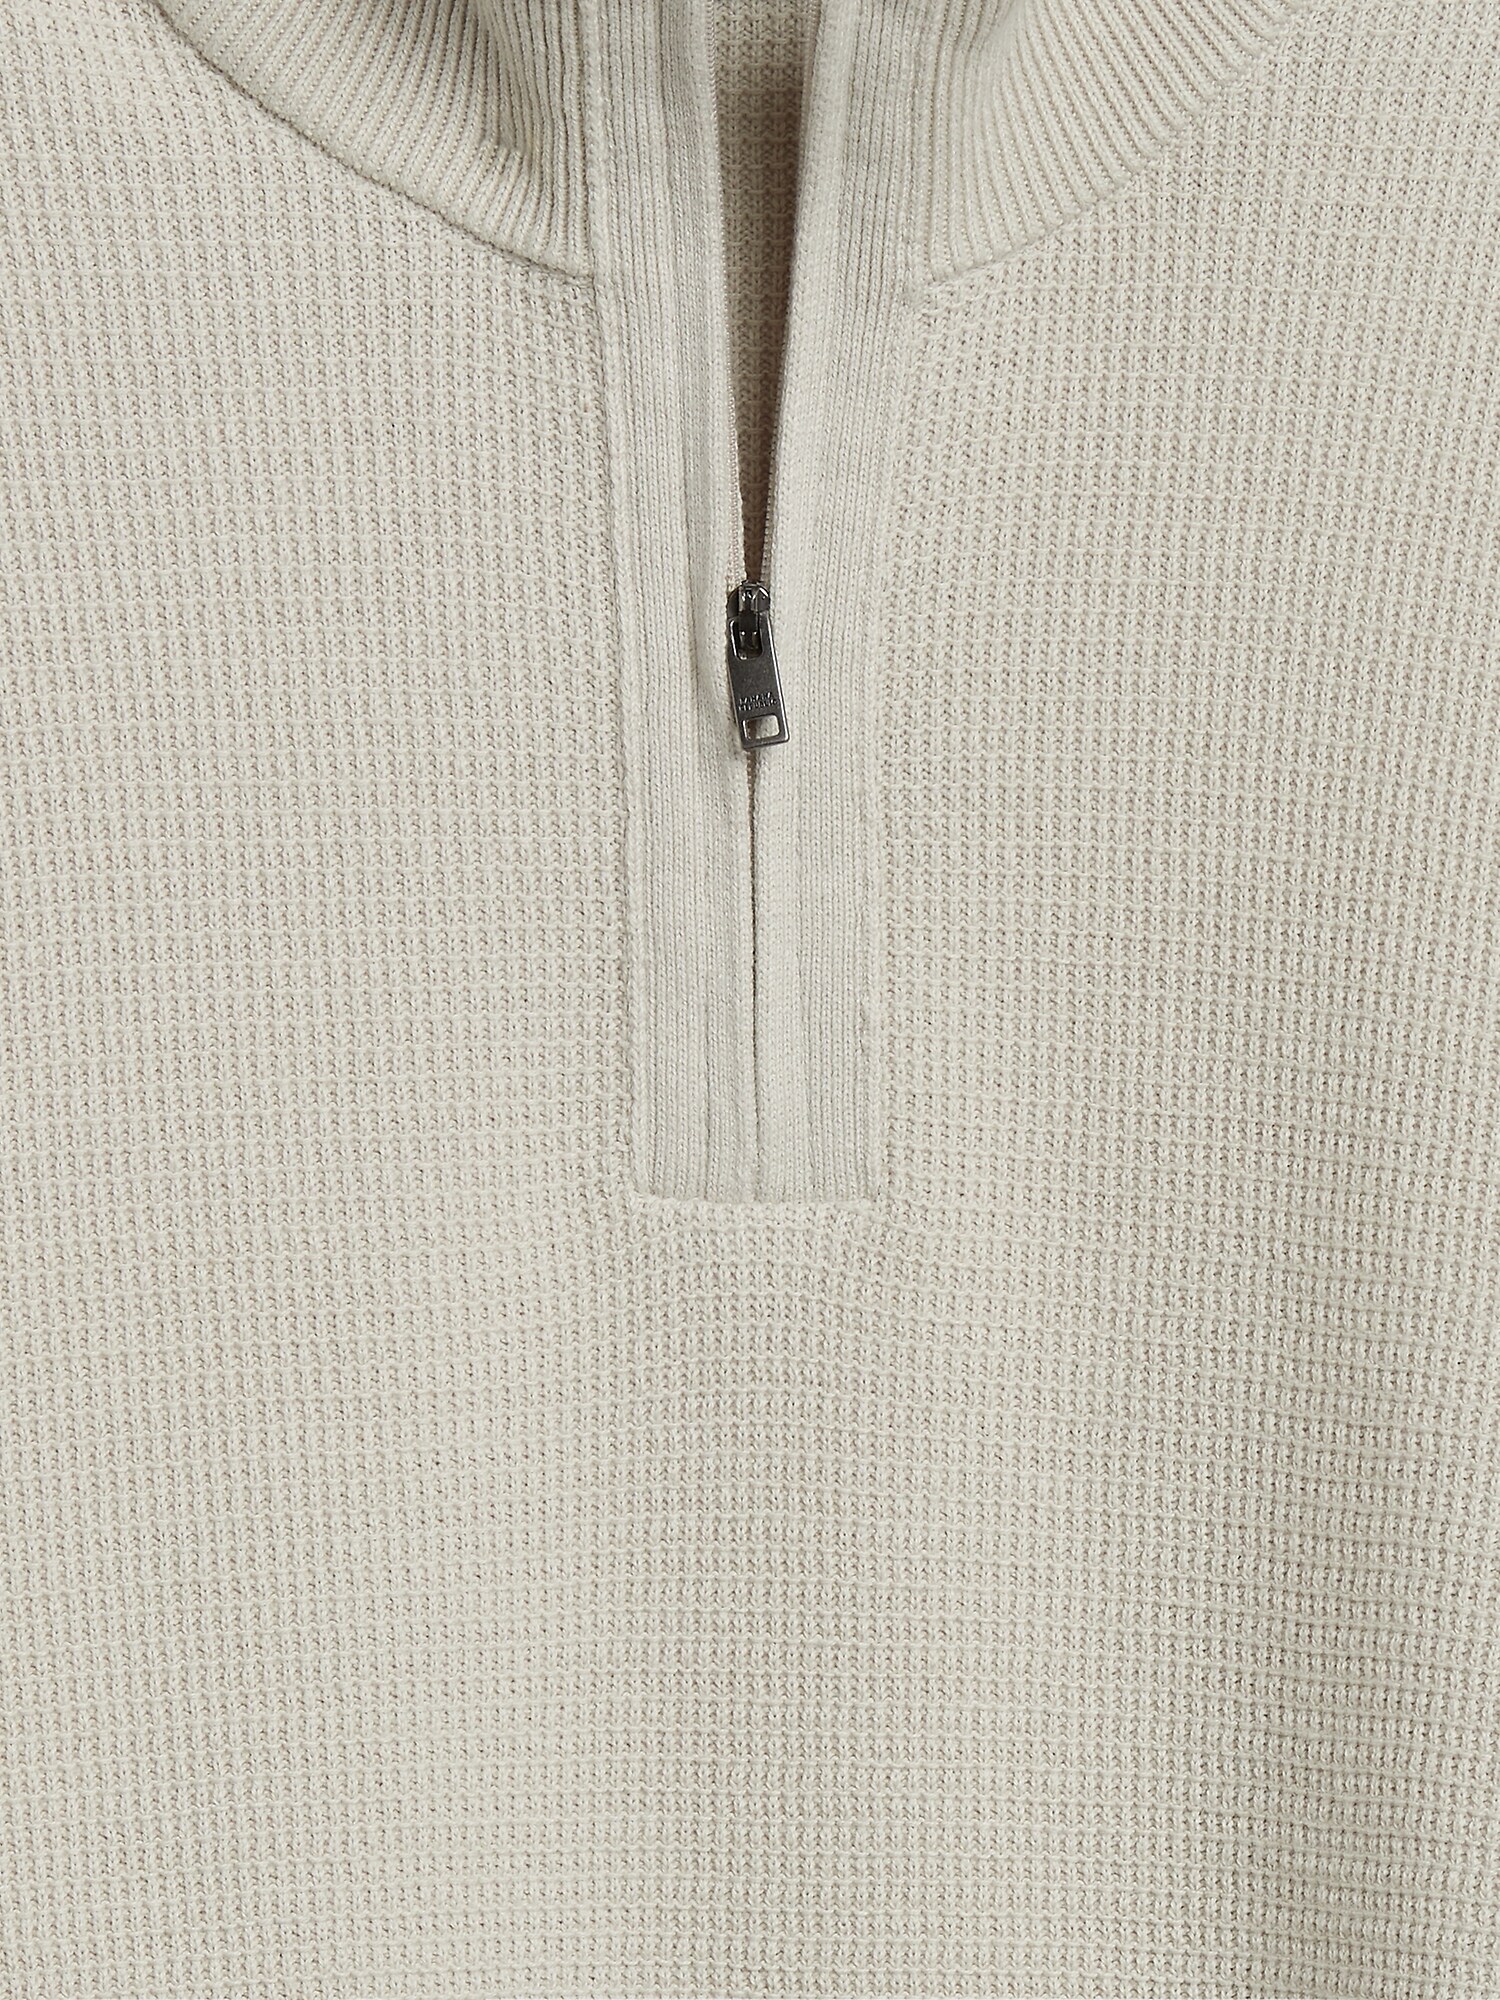 Textured Cotton Mock-Neck 1/4 Zip Sweater